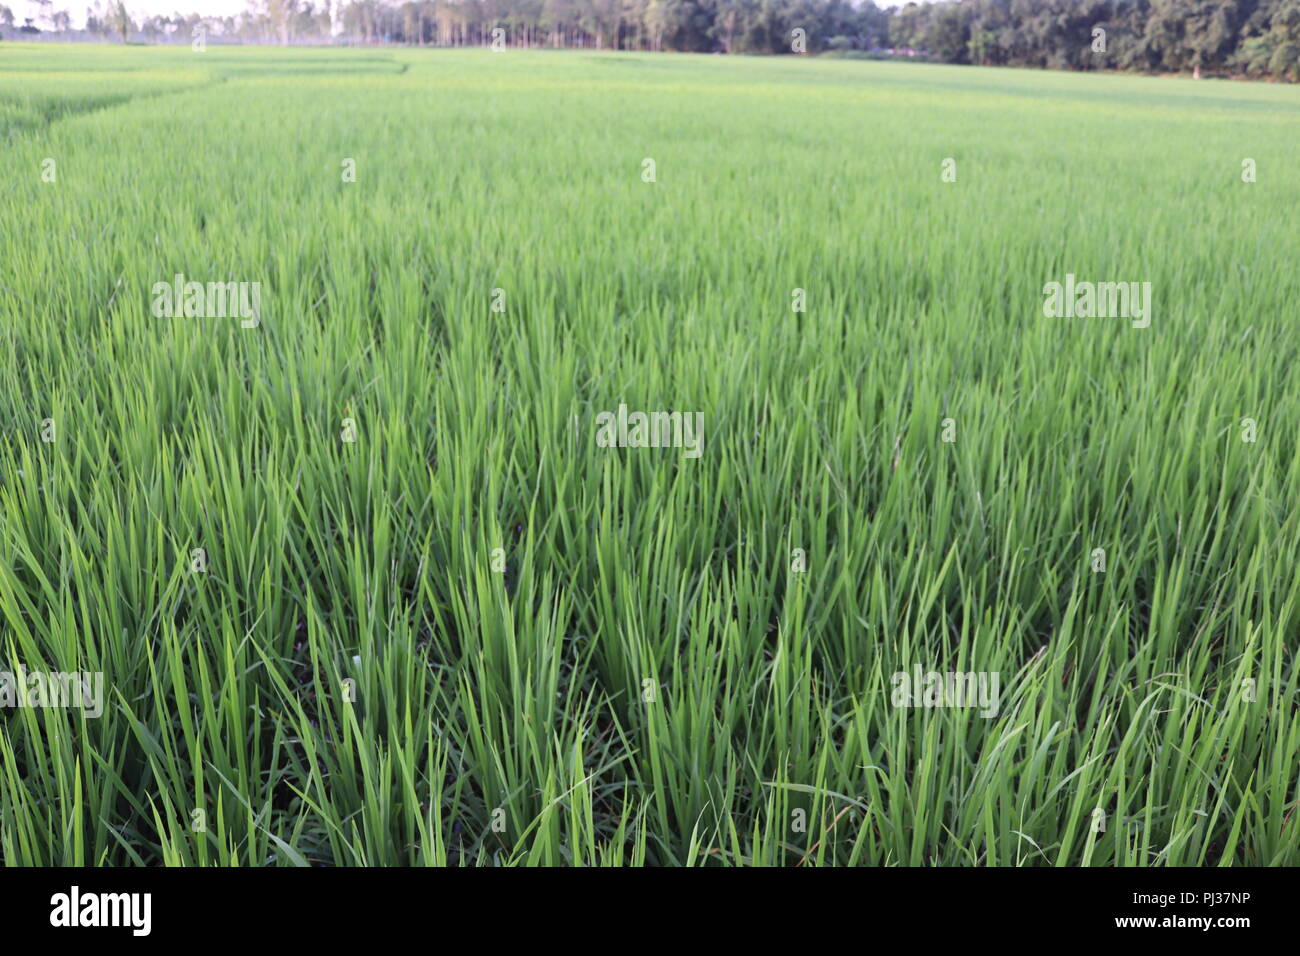 Schönen Blick auf Reisfelder Feld bei Sonnenuntergang in Bangladesch. Grüne Natur Landschaft mit Rohreis Feld. Ein großes Reisfeld. Stockfoto